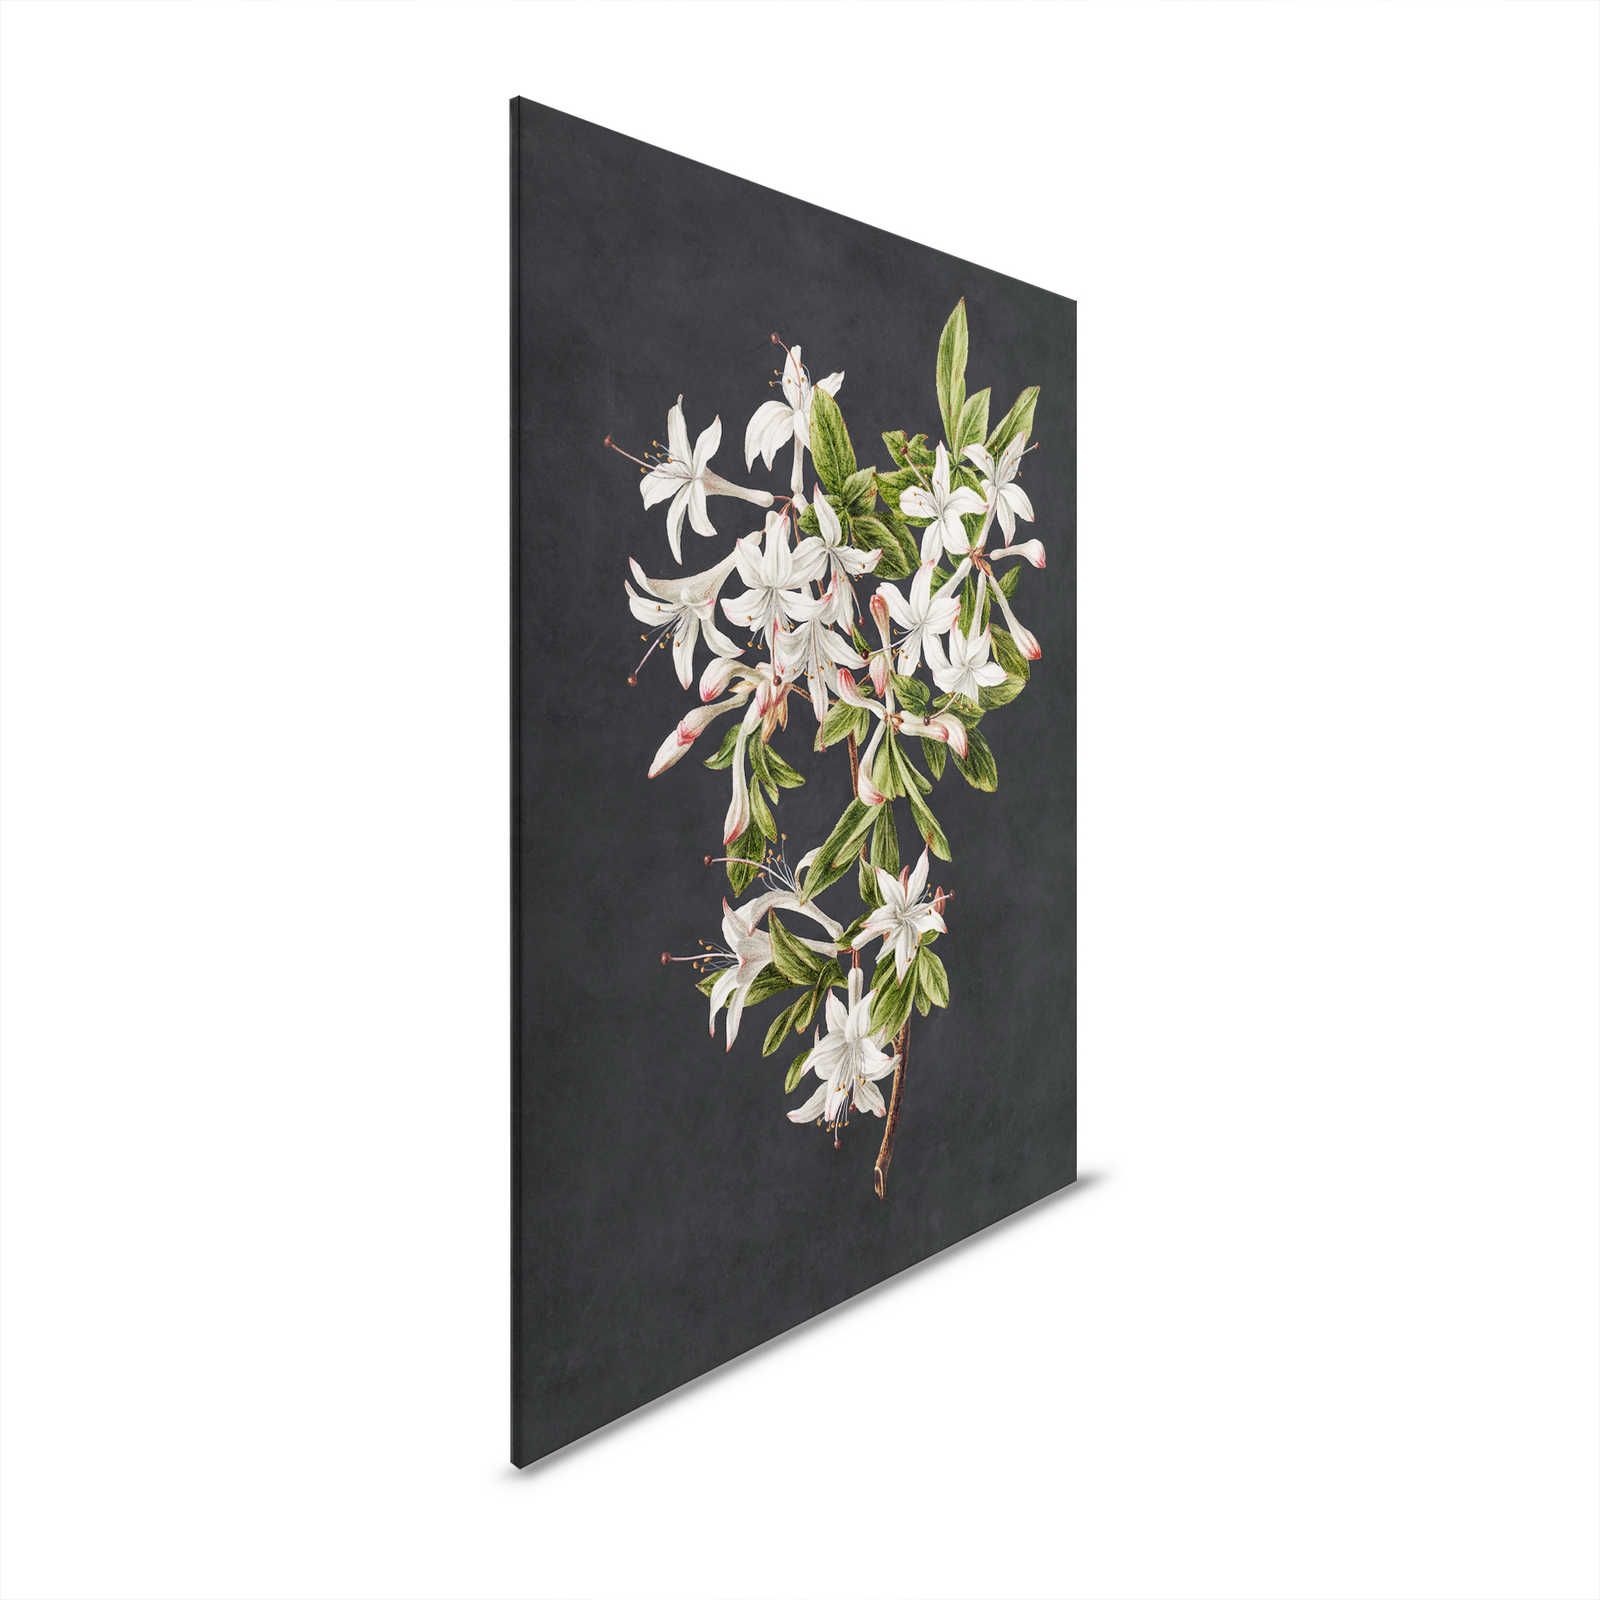 Midnight Garden 2 - Zwart Canvas Schilderij Bloemtak Witte Bloemrijk - 0.60 m x 0.90 m
